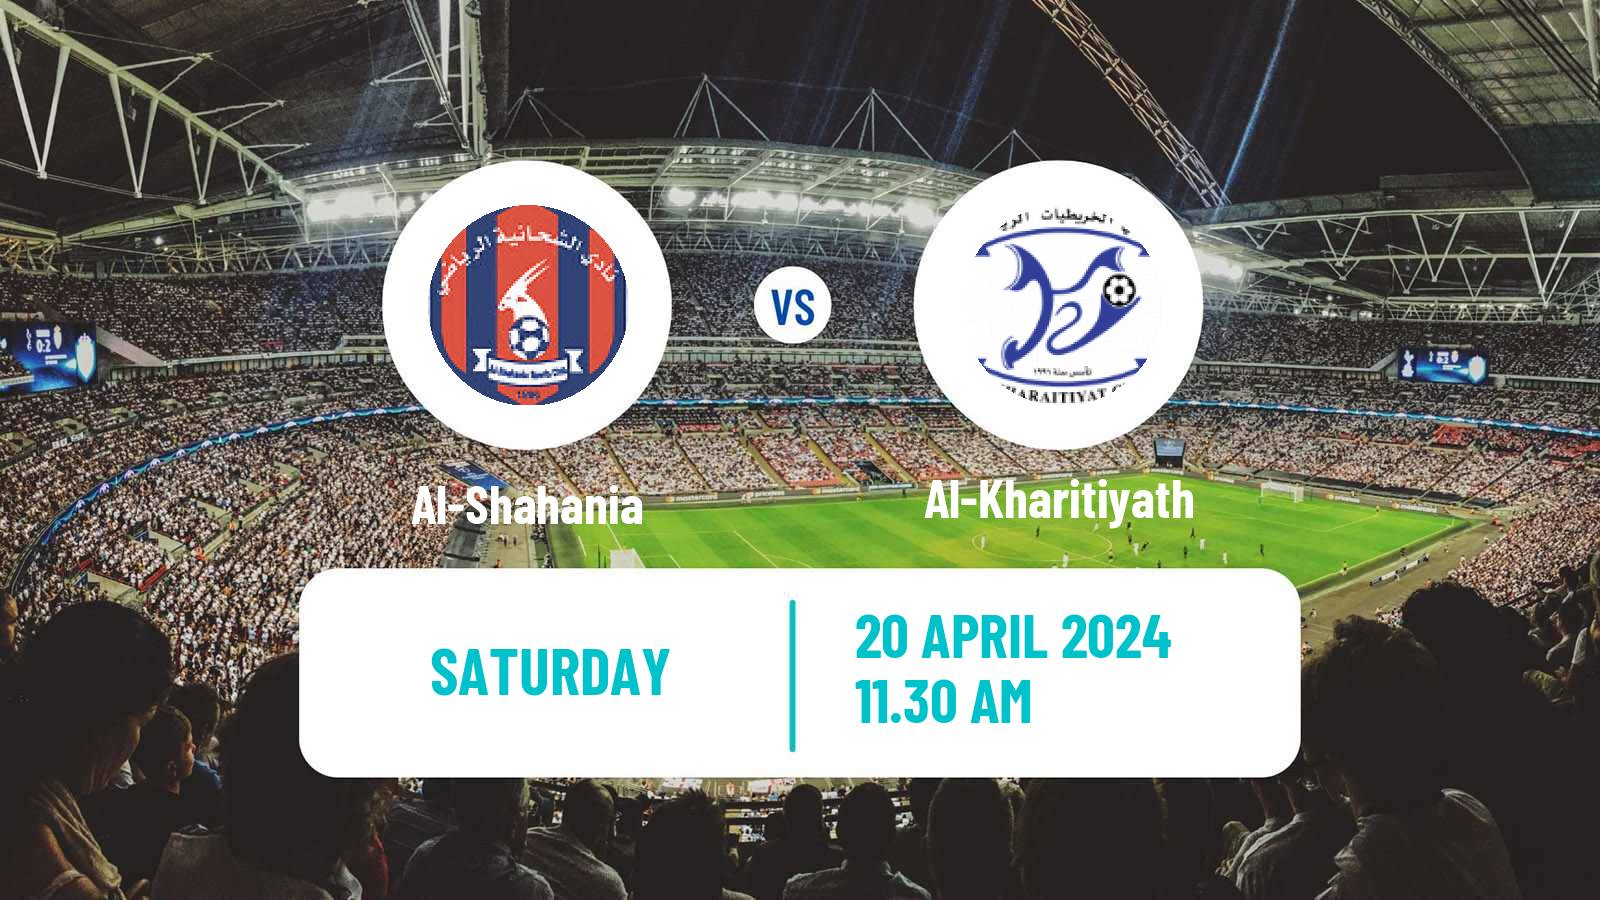 Soccer Qatar Division 2 Al-Shahania - Al-Kharitiyath